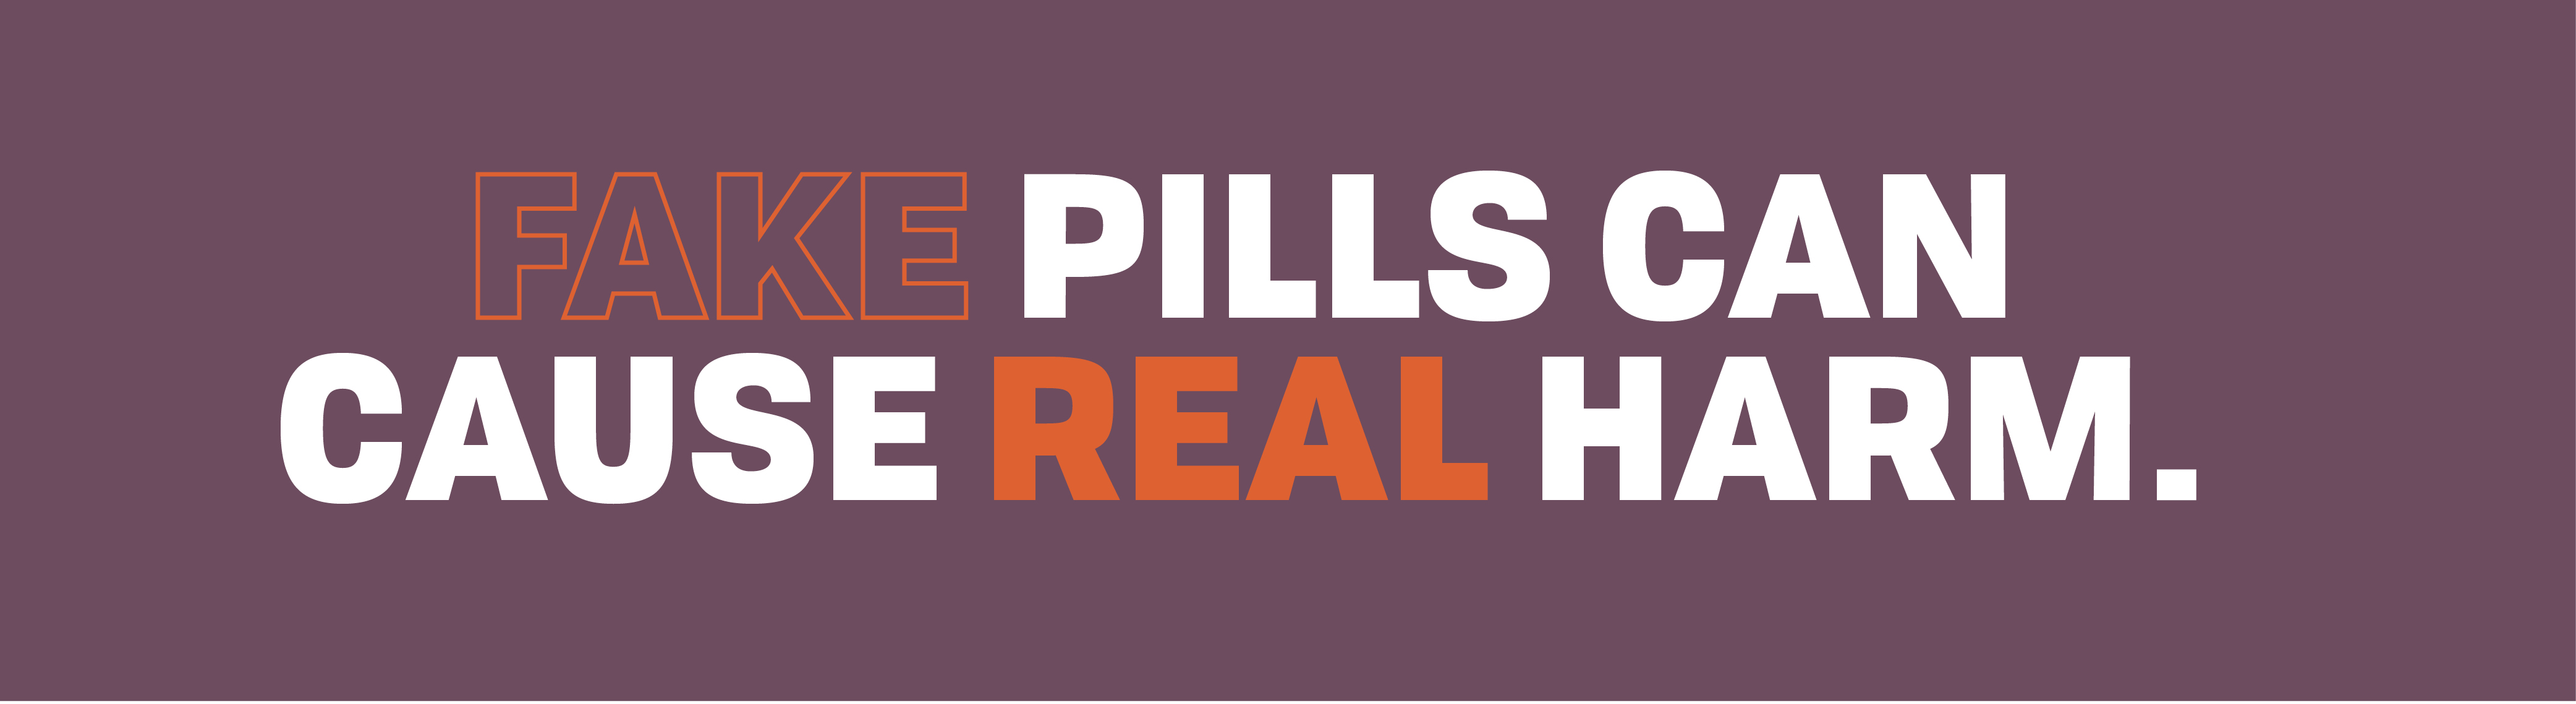 Fake pills cause real harm